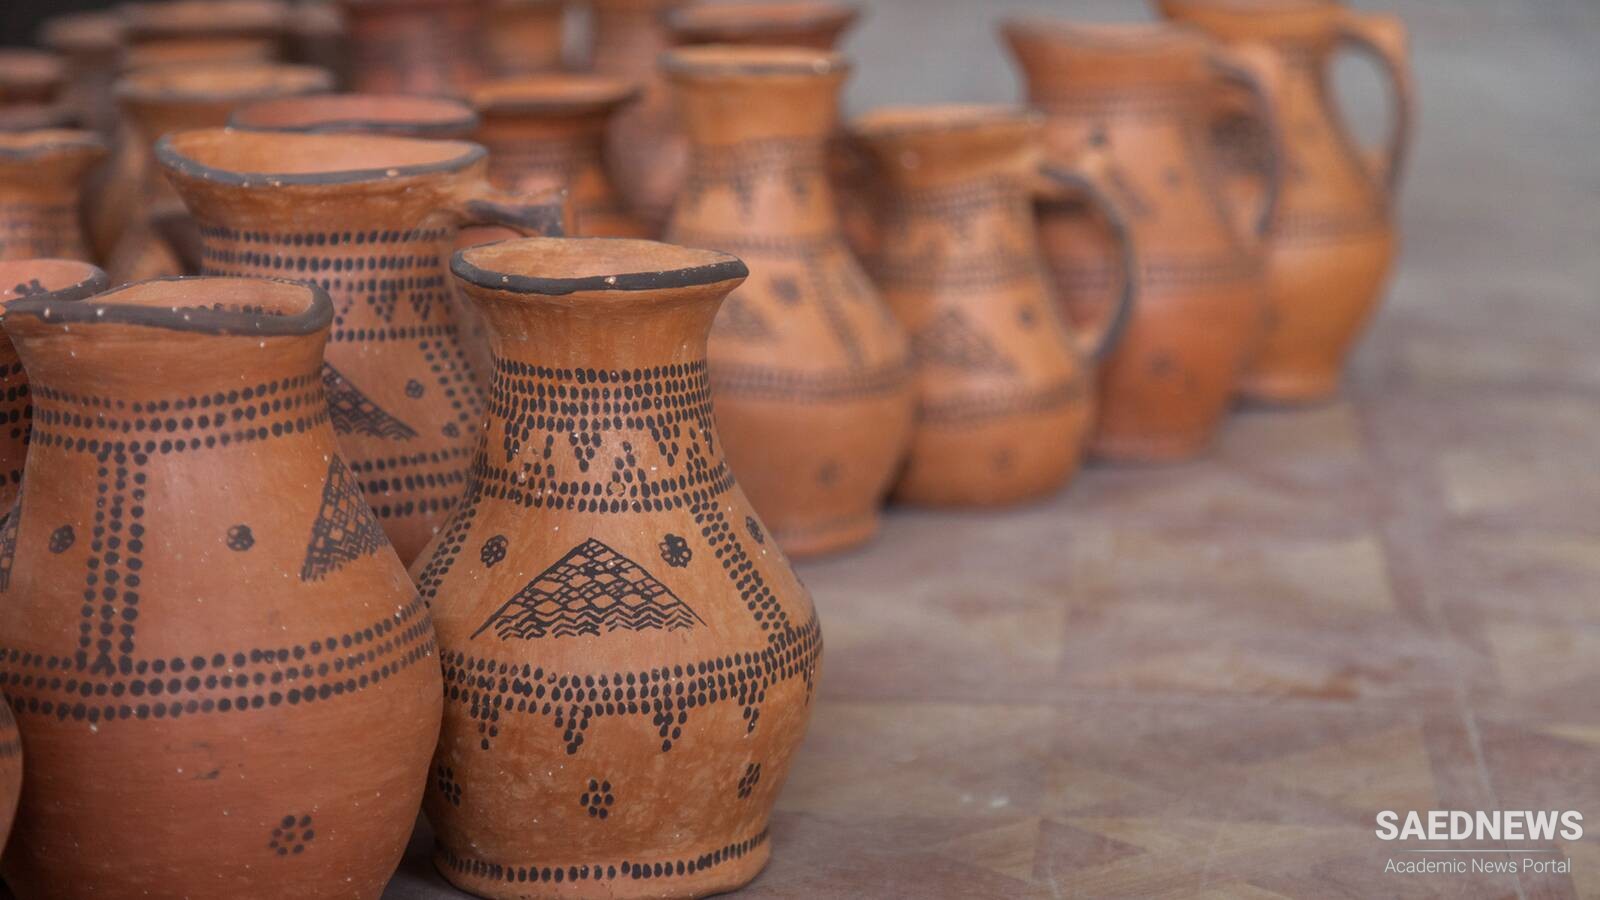 Kalpurgan Pottery